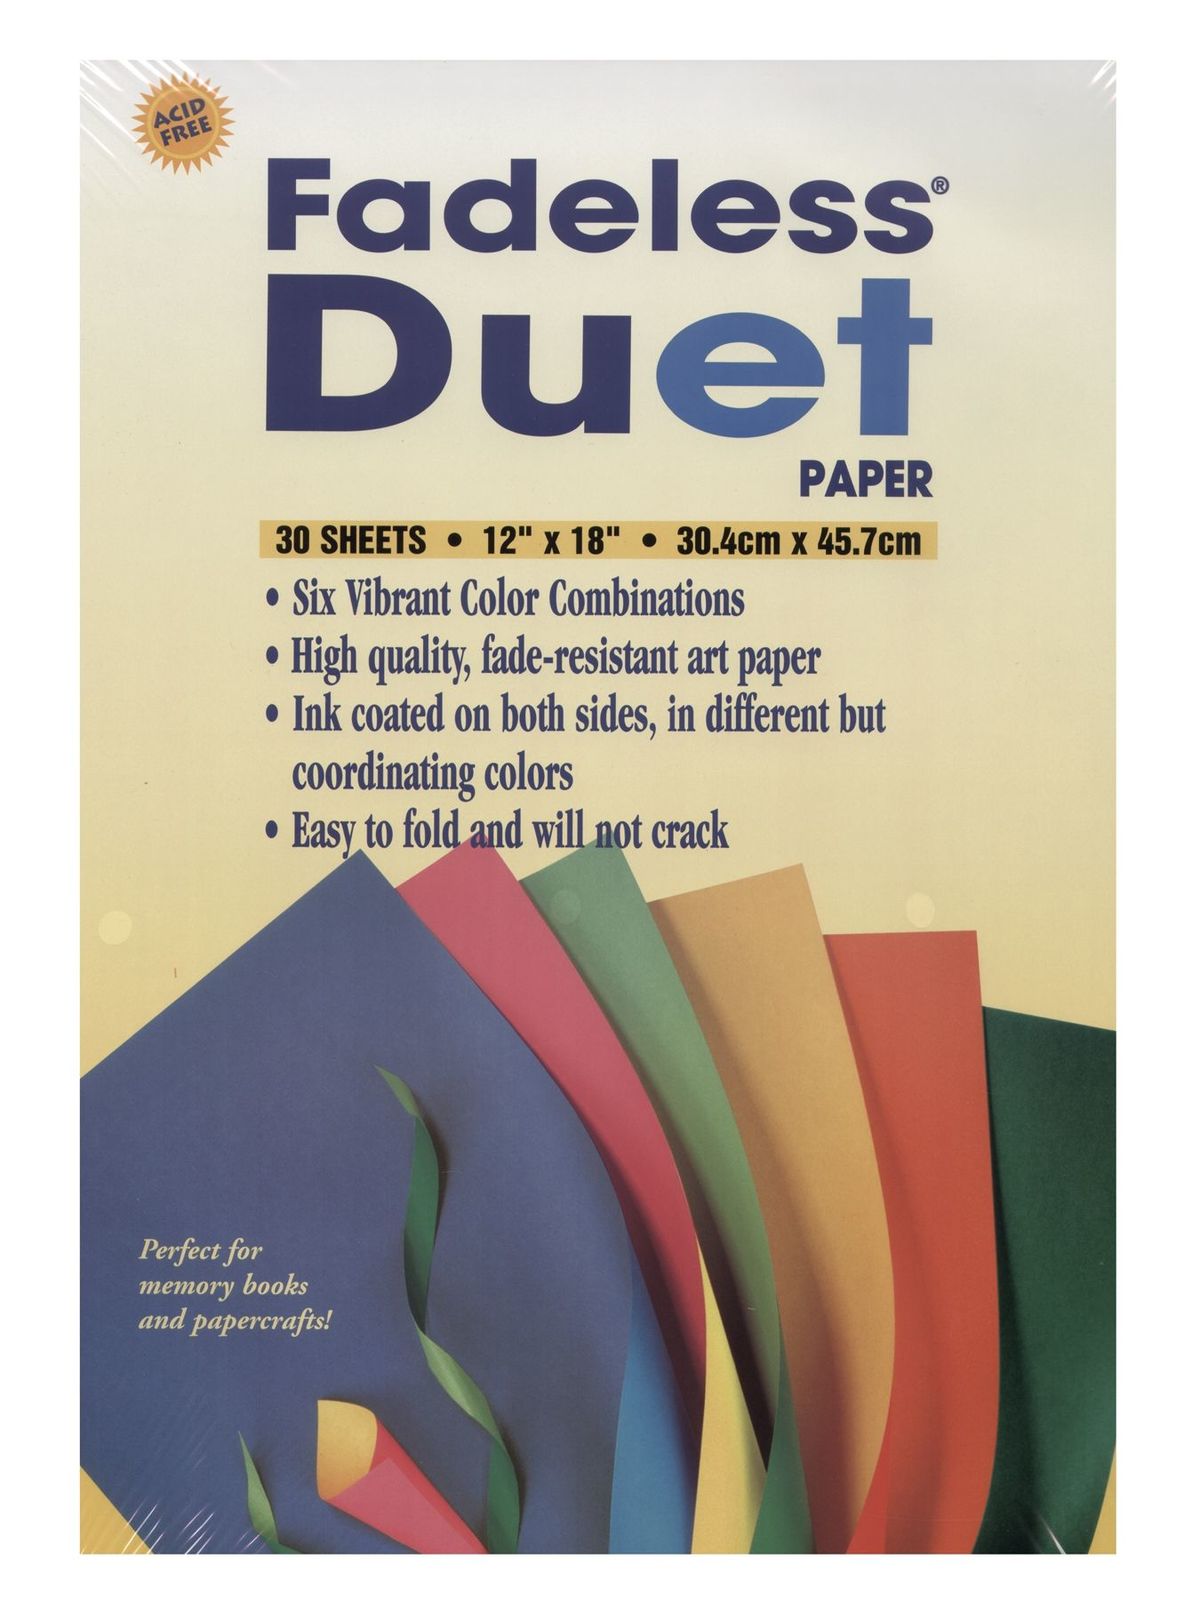 Fadeless Duet Paper 30 Sheets